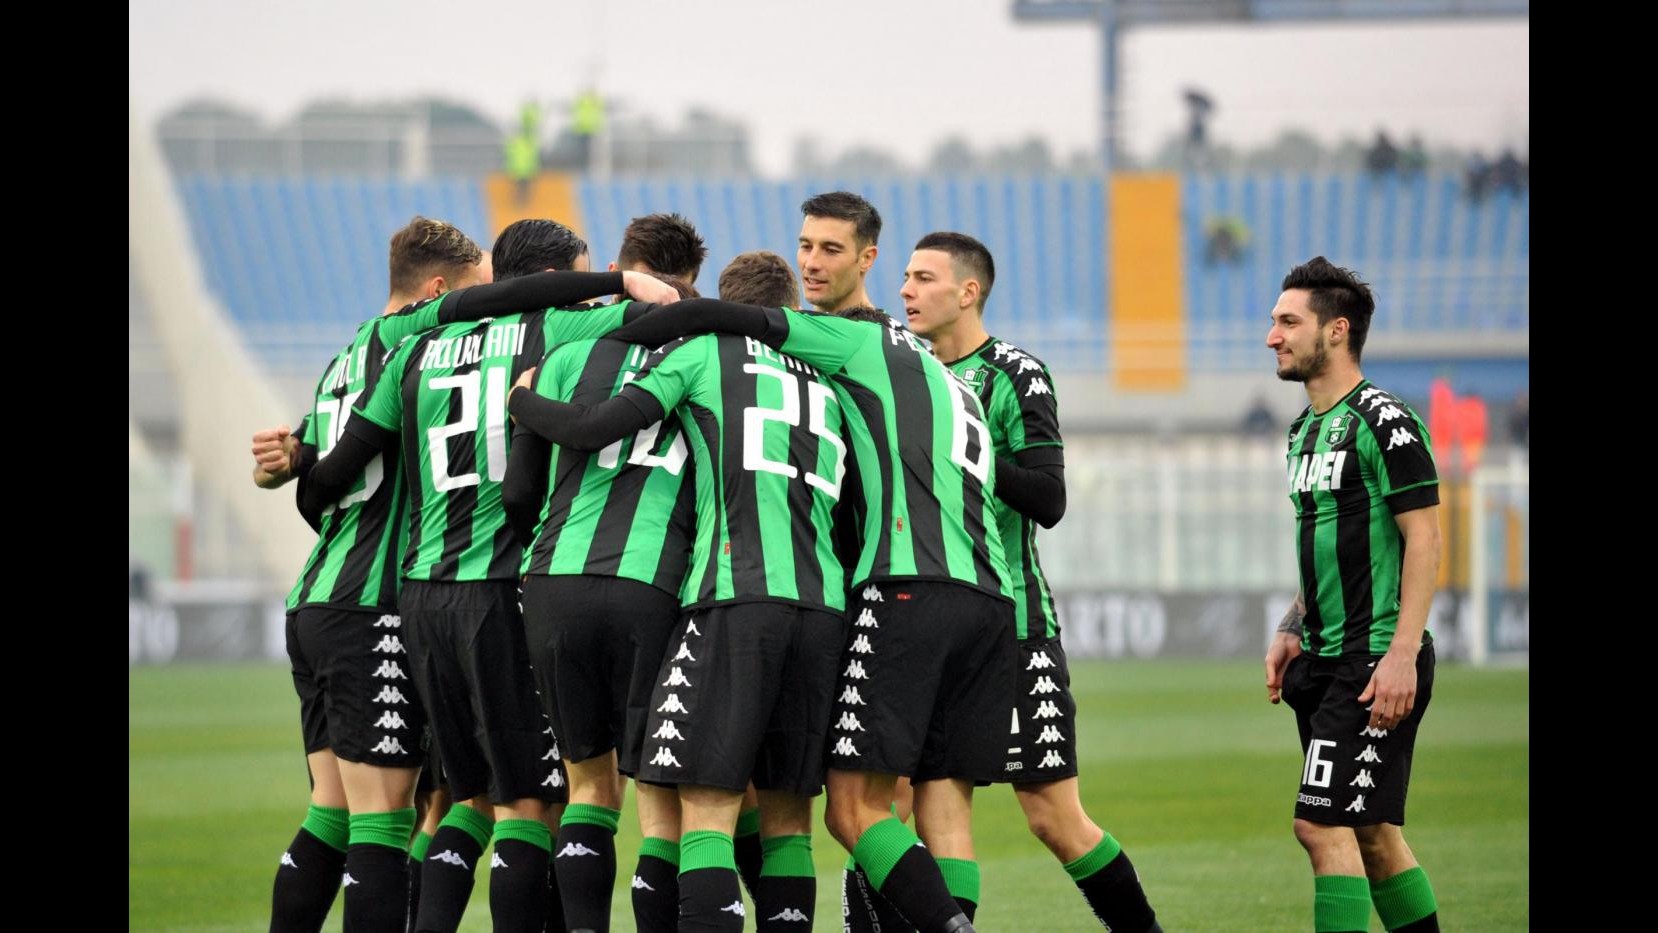 FOTO Serie A, Sassuolo stende Pescara 3-1 in trasferta